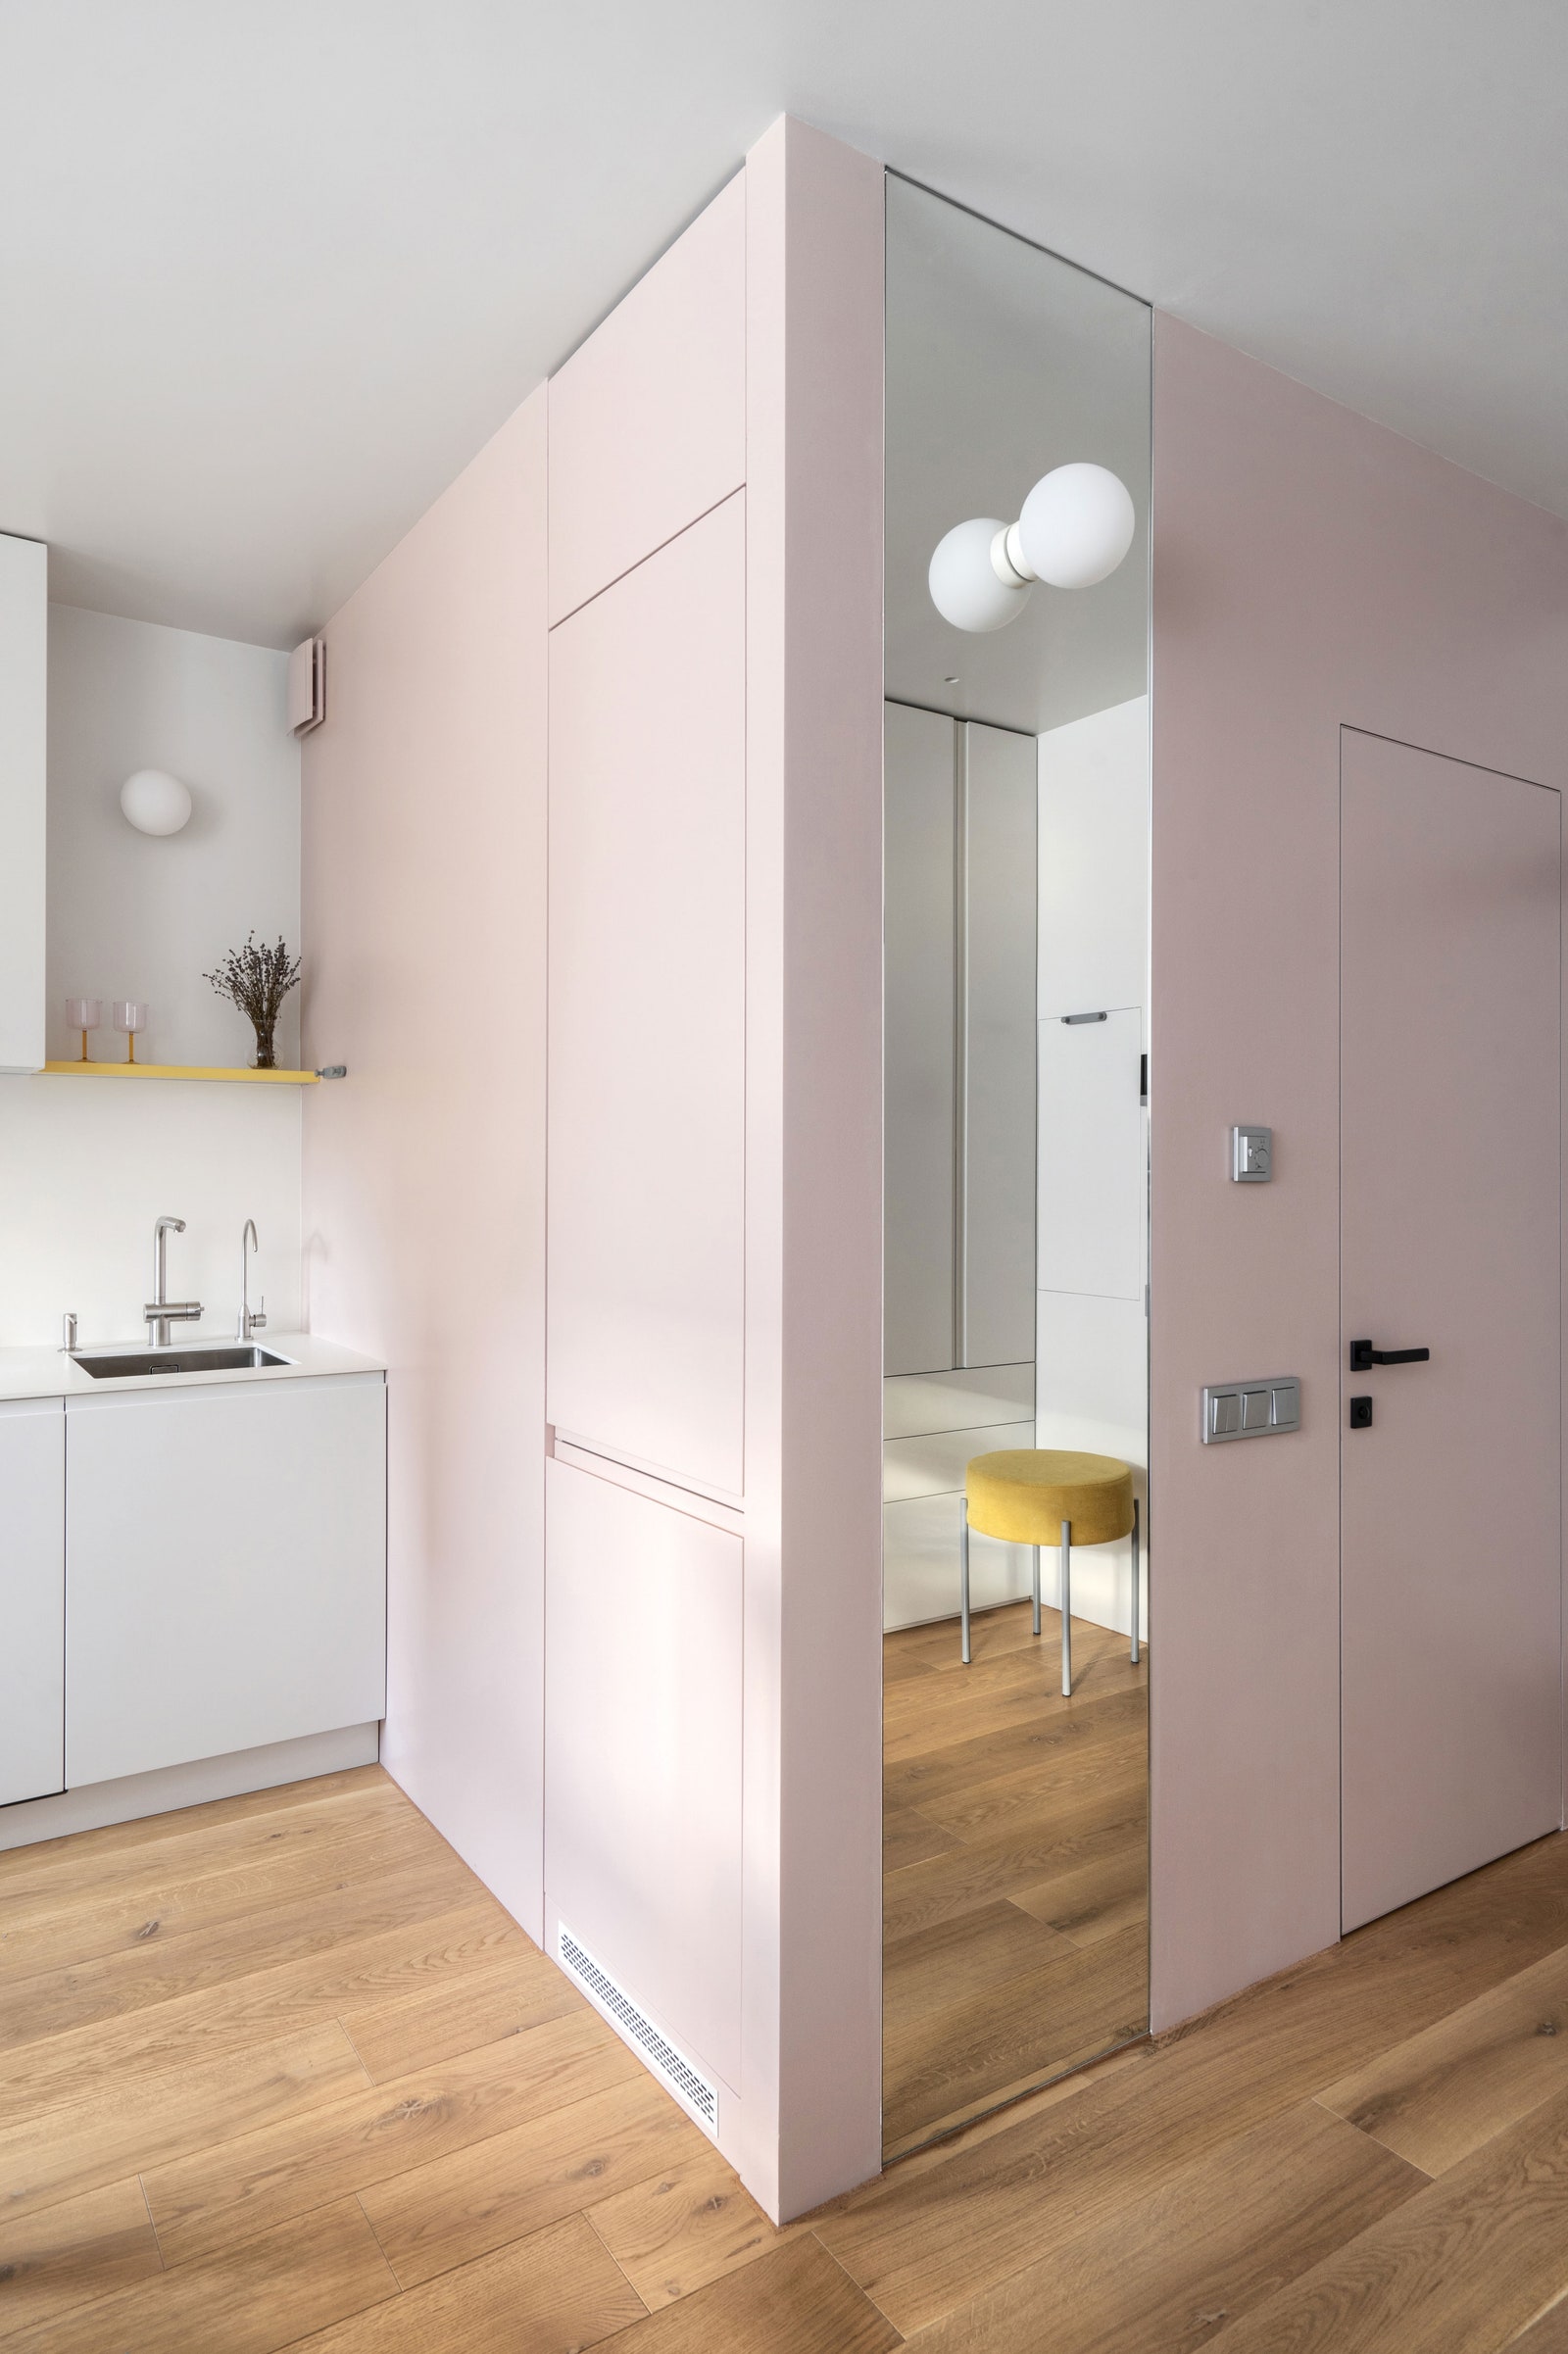 В розовом кубе заключена ванная комната со стороны кухни в него встроен холодильник. Зеркало сделано по чертежам...